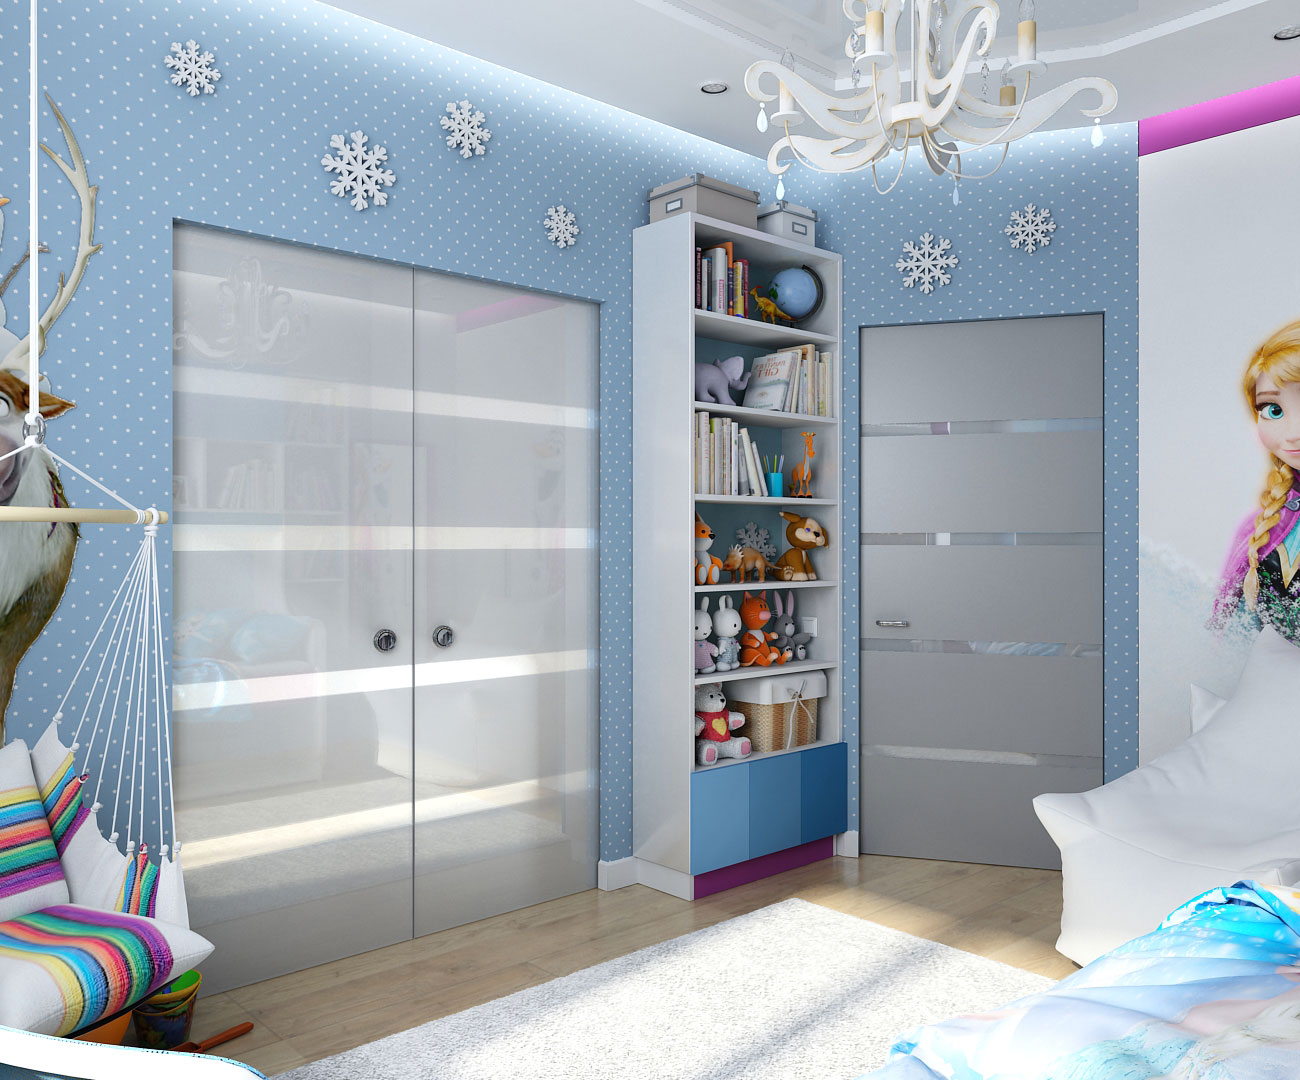 Design d'intérieur dans le style de « Frozen » enfants à Tchernigov dans 3d max vray 1.5 image